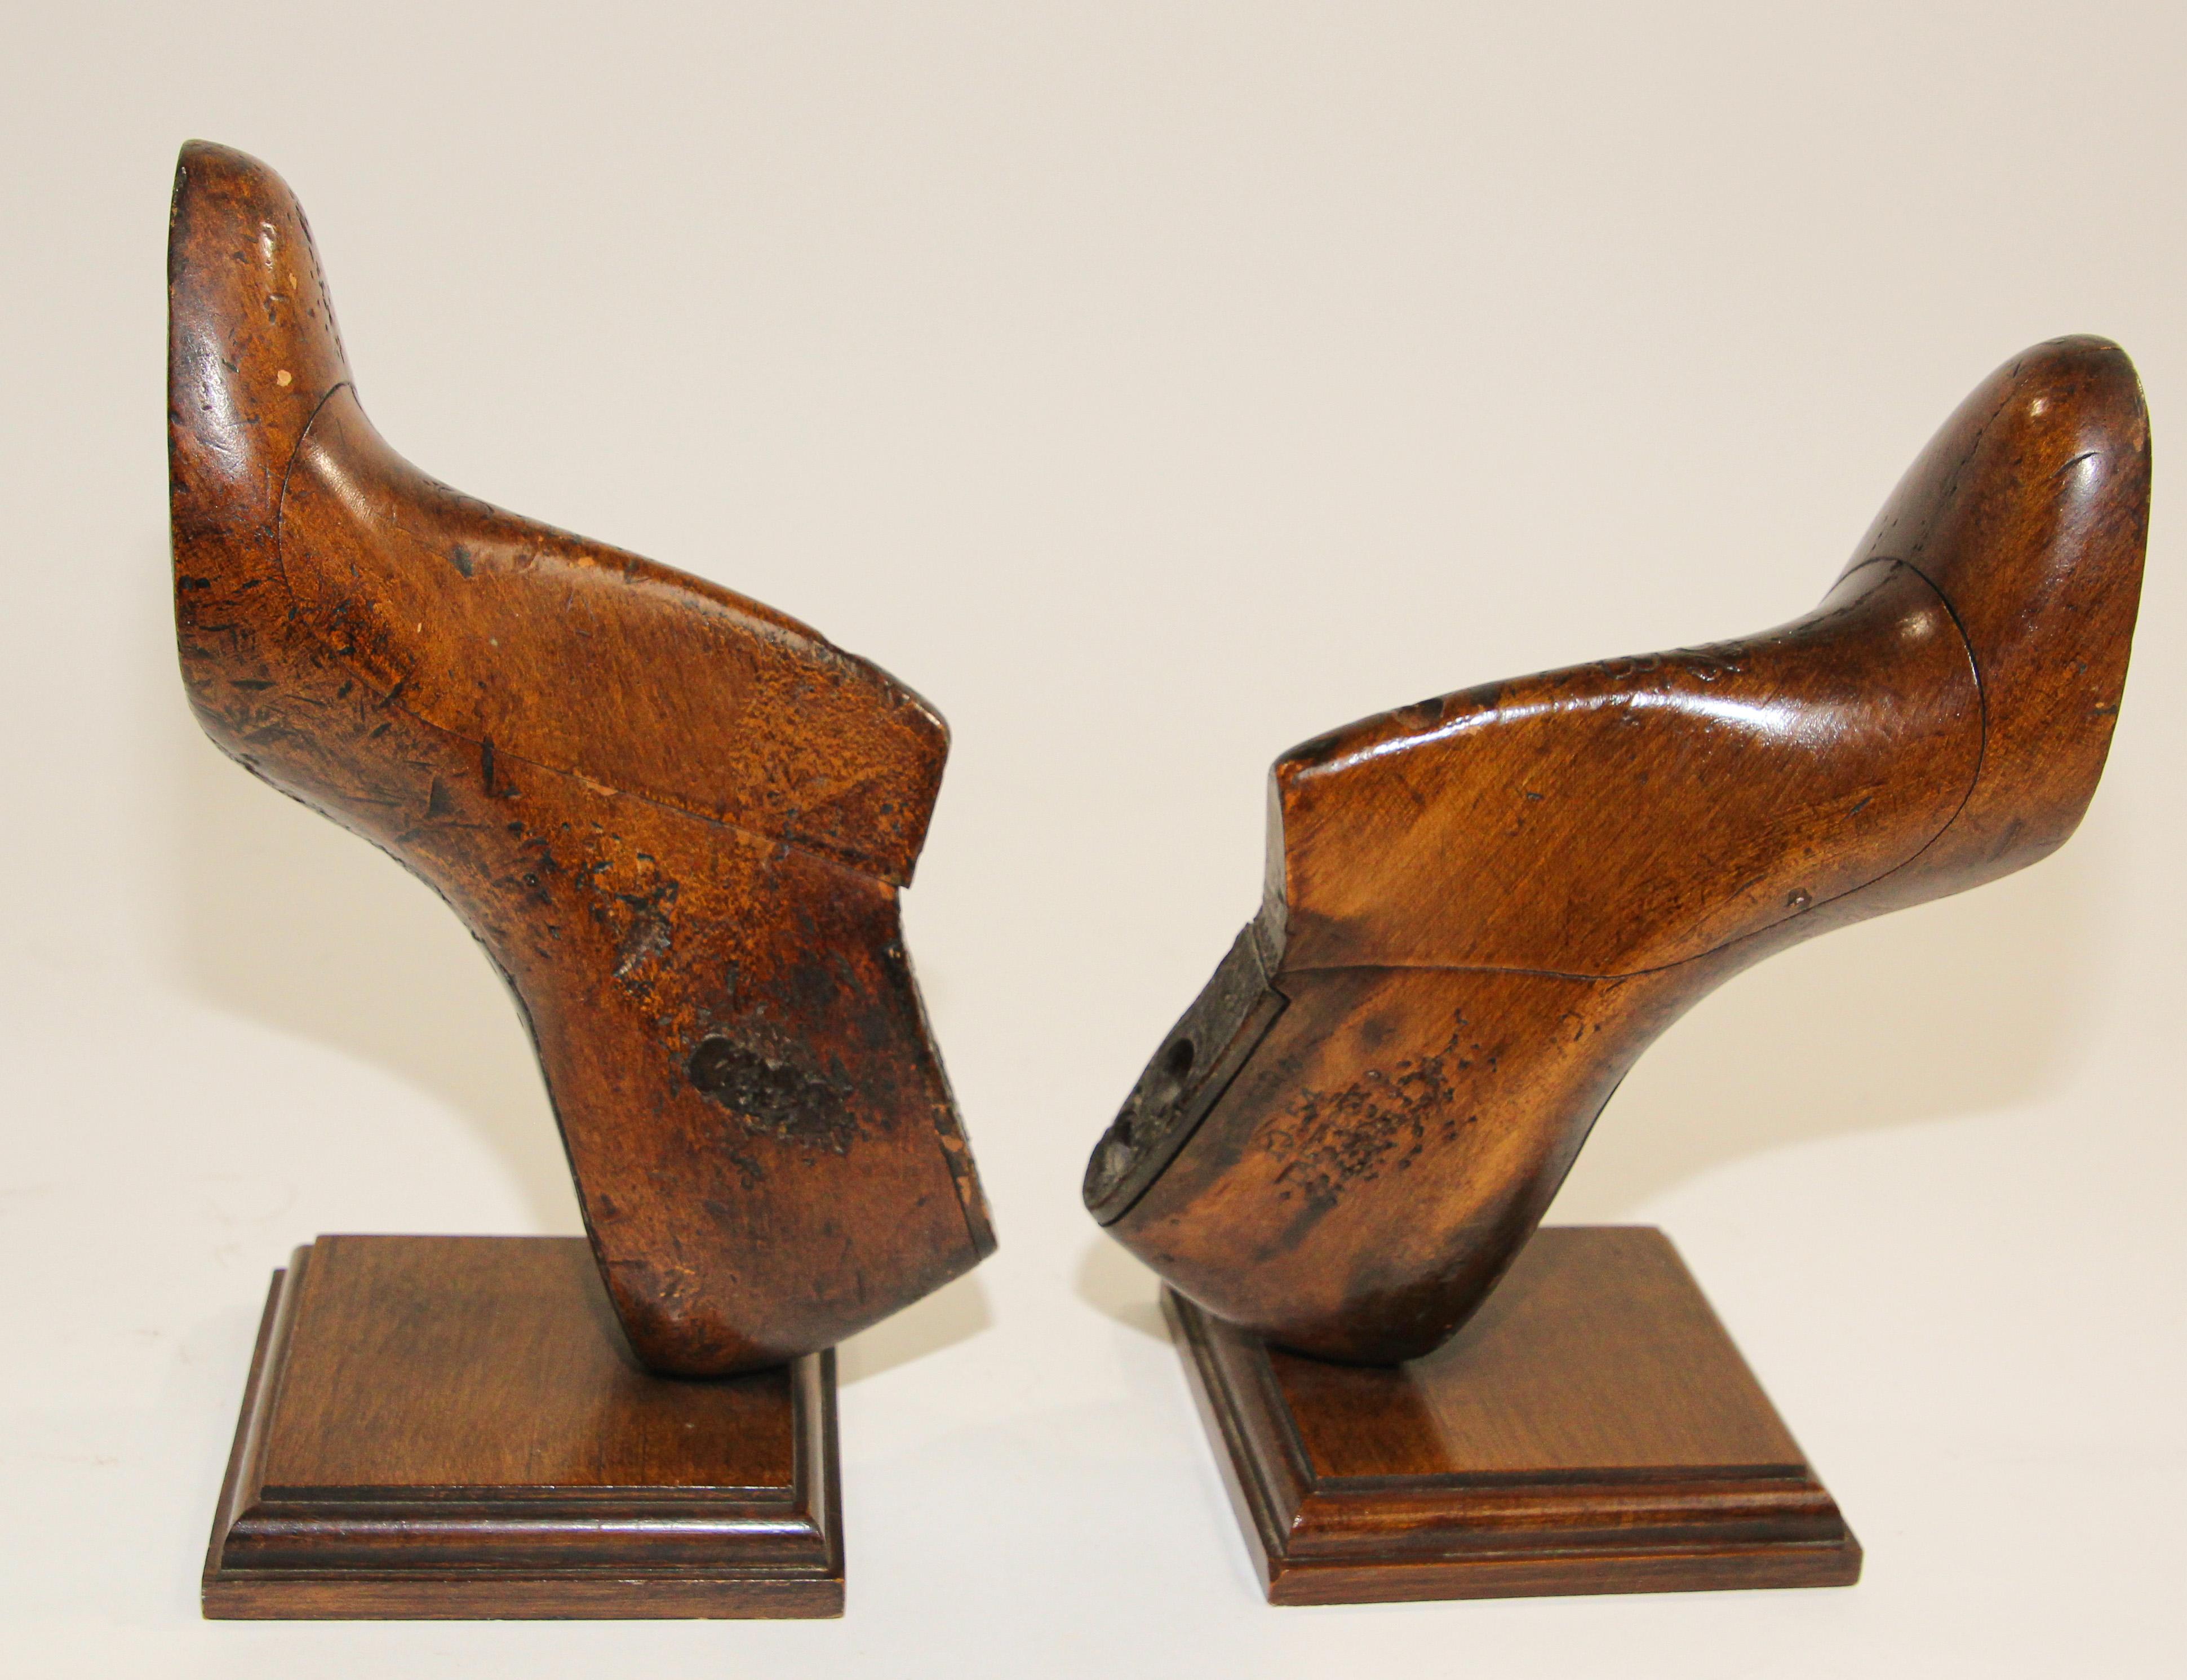 Vintage American Holz Frauen Schuh Form Formen montiert als Buchstützen
Vintage Holzform zur Herstellung von Schuhen aus den 1930er Jahren.
Ein Paar von Schuh Form Buchstützen, diese gut geschnitzt Massivholz Schuhform würde verwendet werden, um